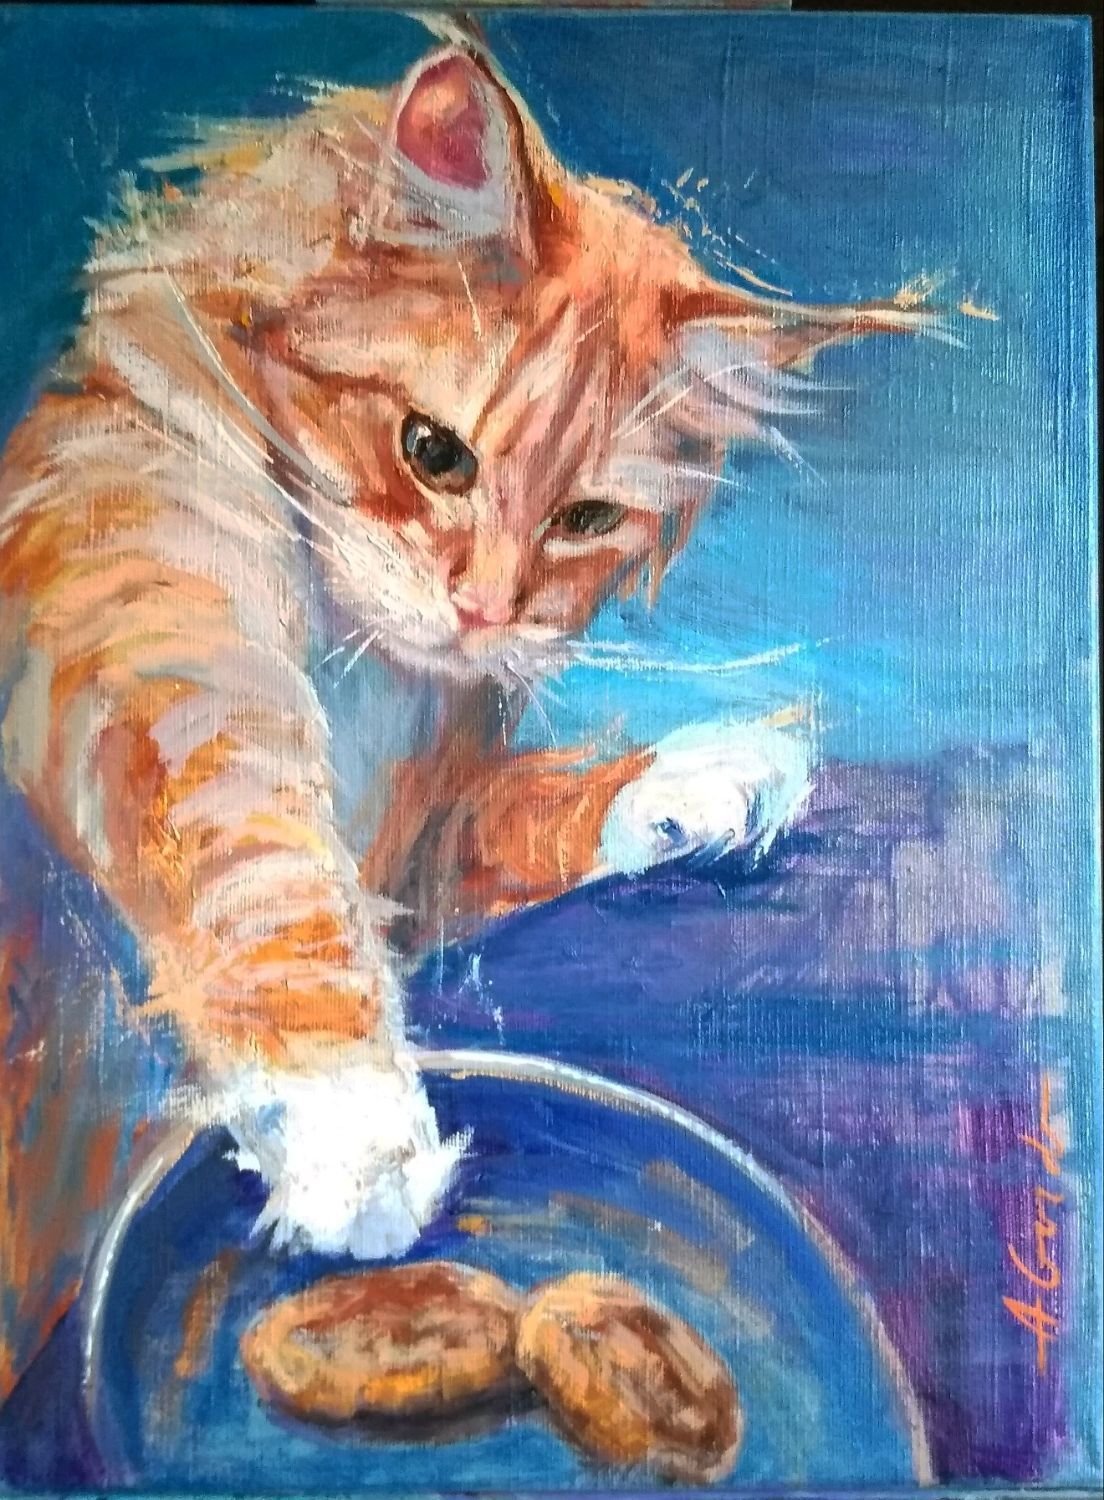 Рыжие коты в живописи